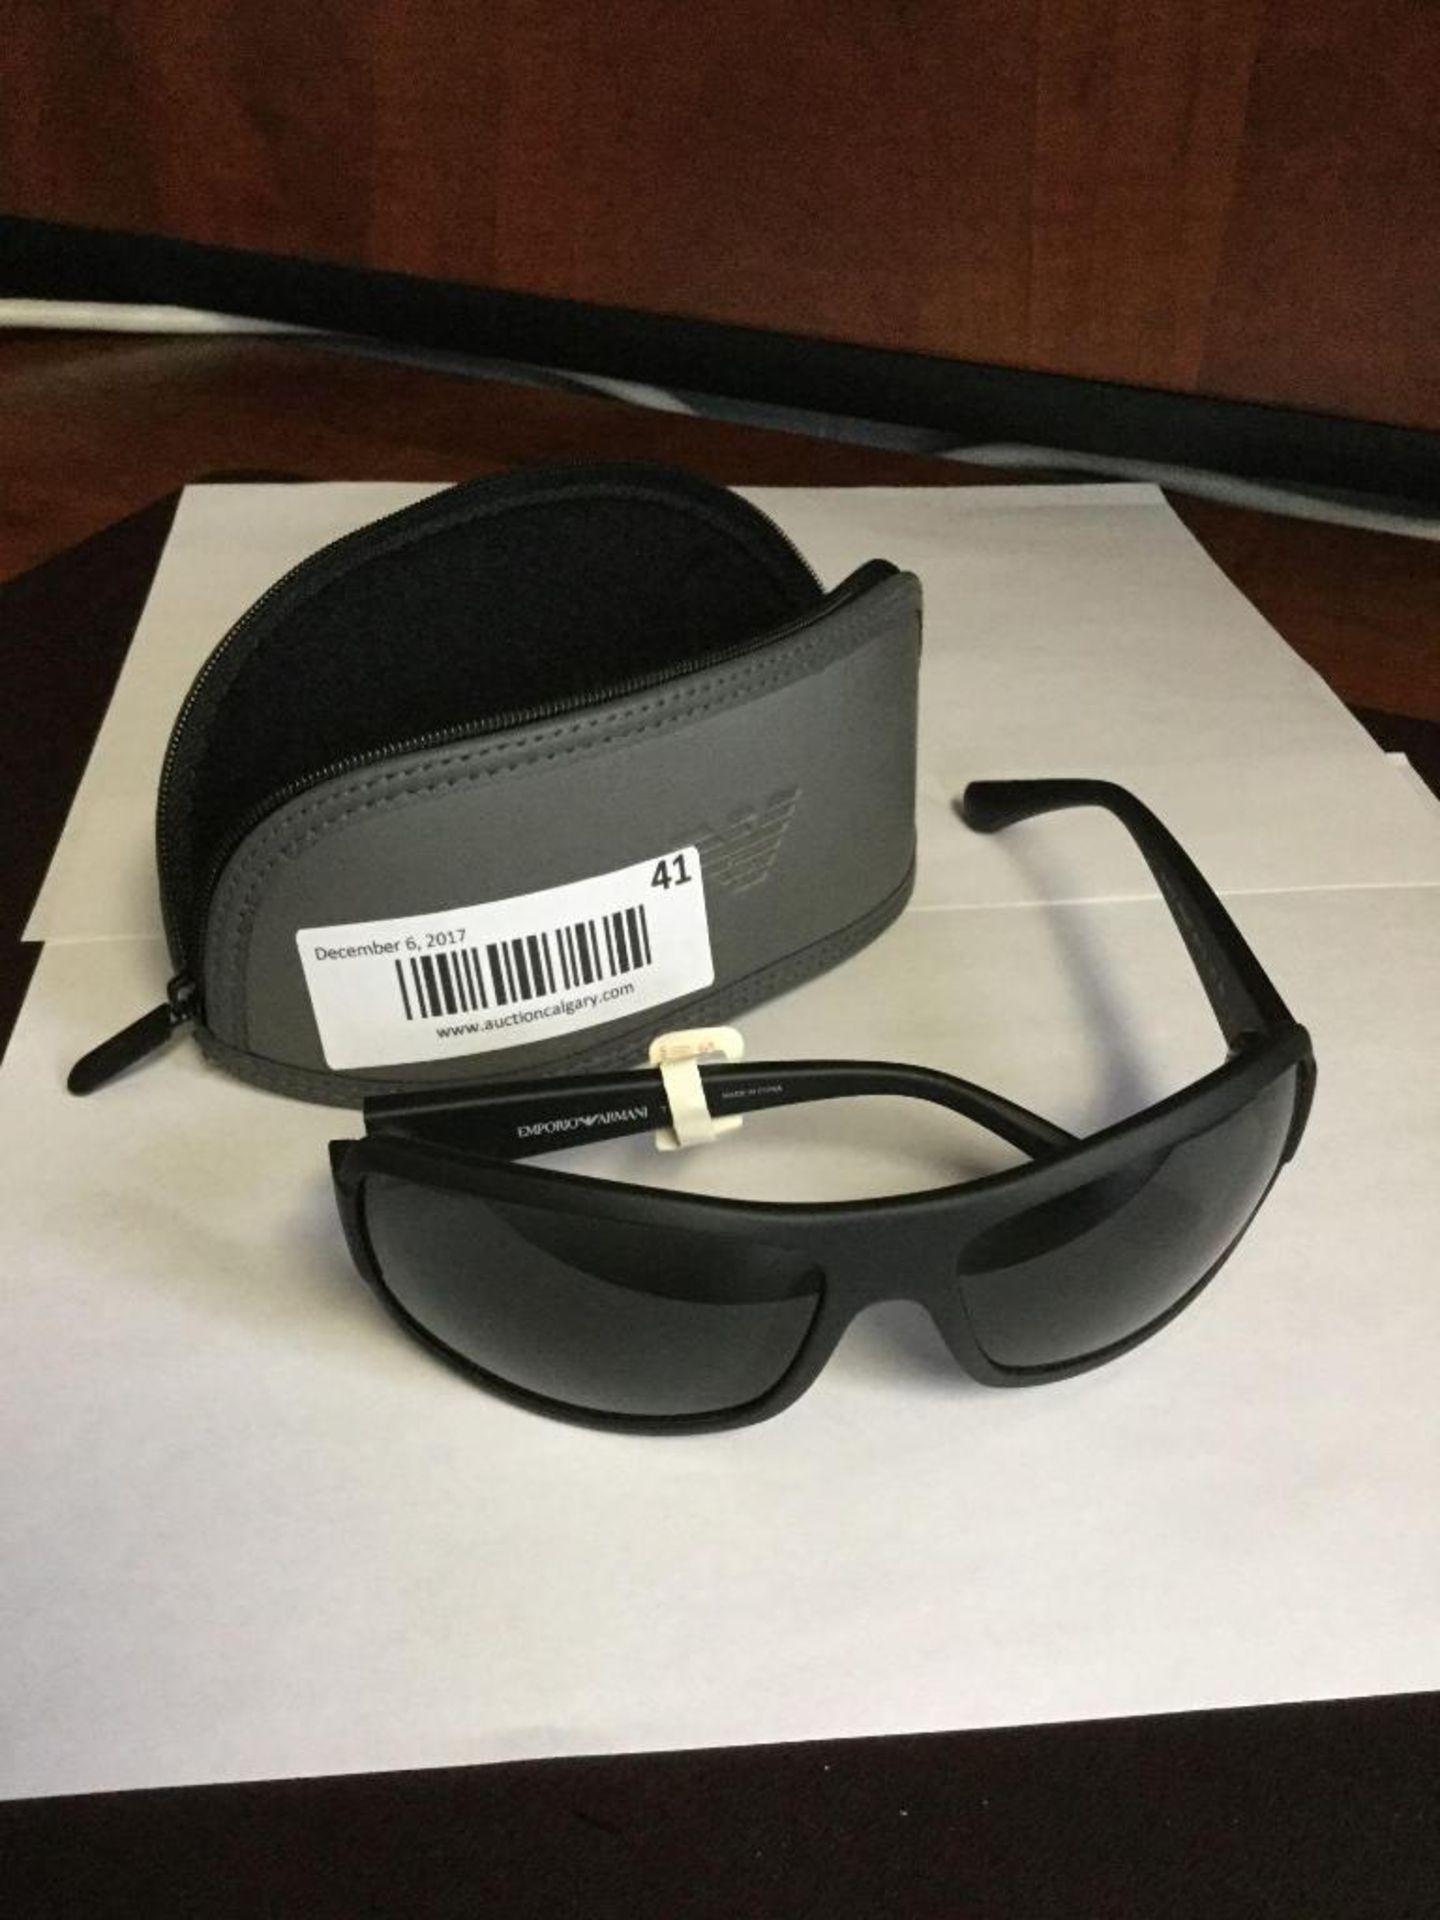 Emporio Armani Sunglasses - Value $150